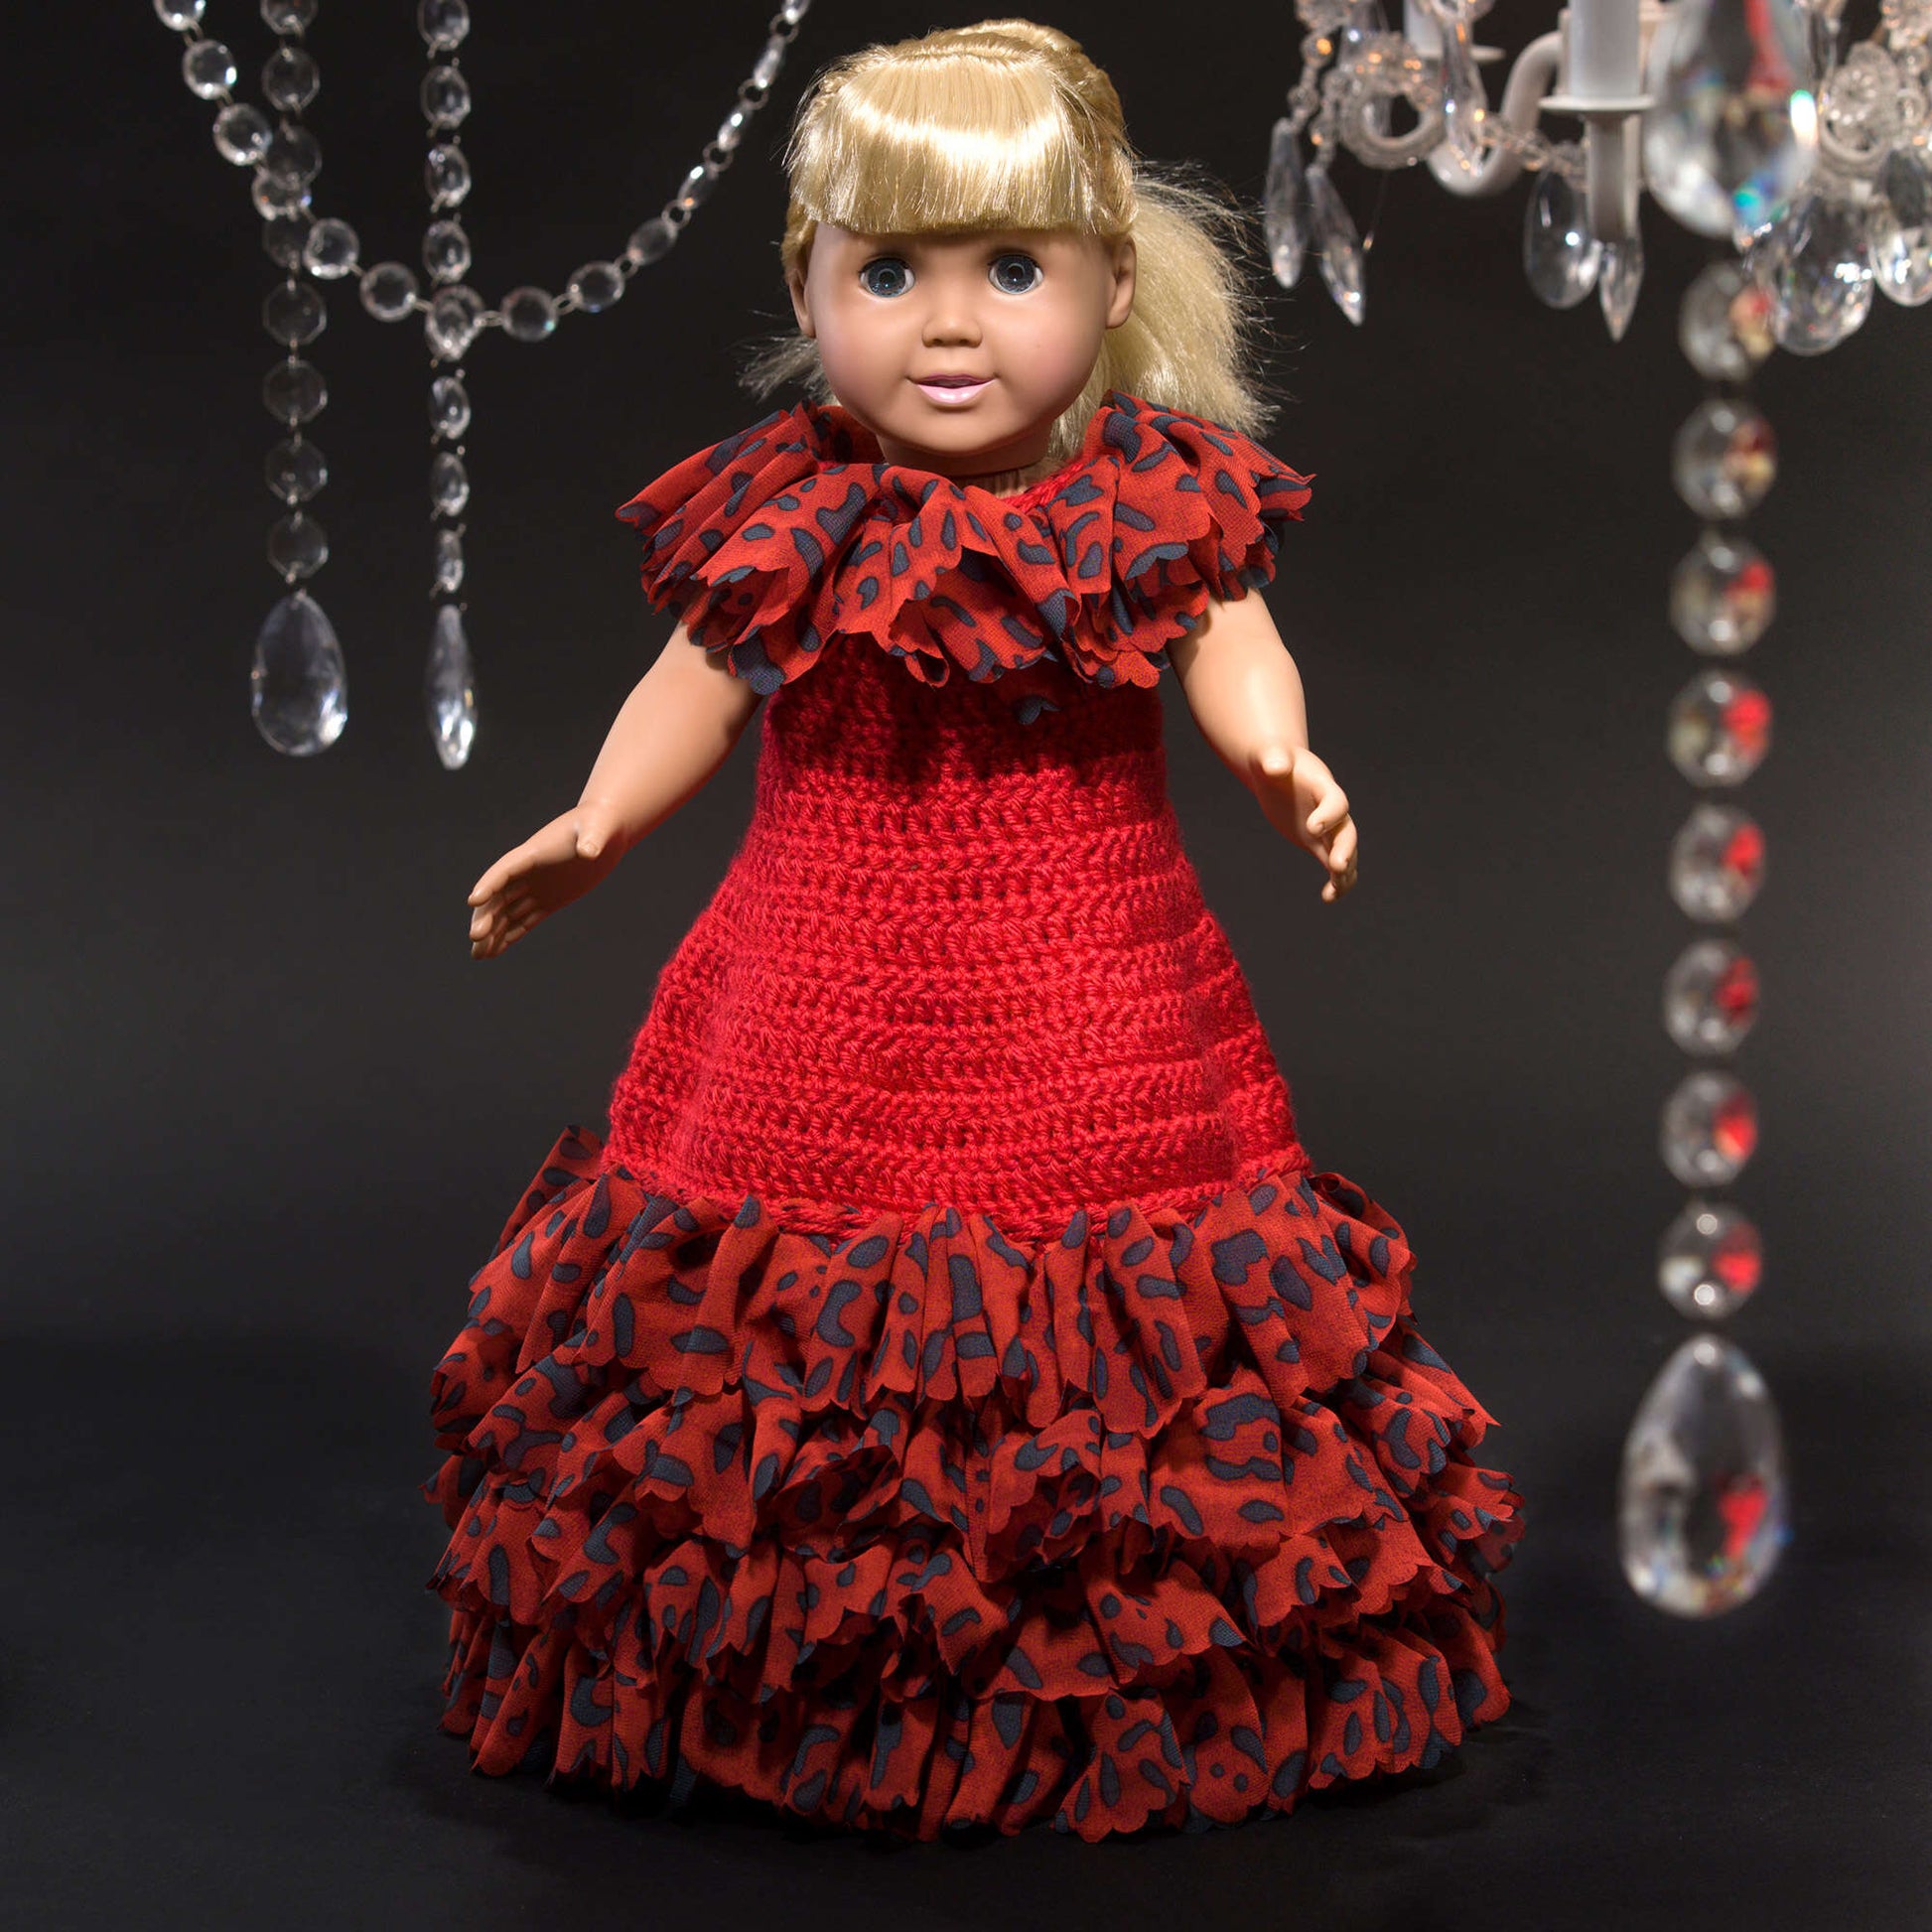 Free Red Heart Debutante Doll Dress Crochet Pattern